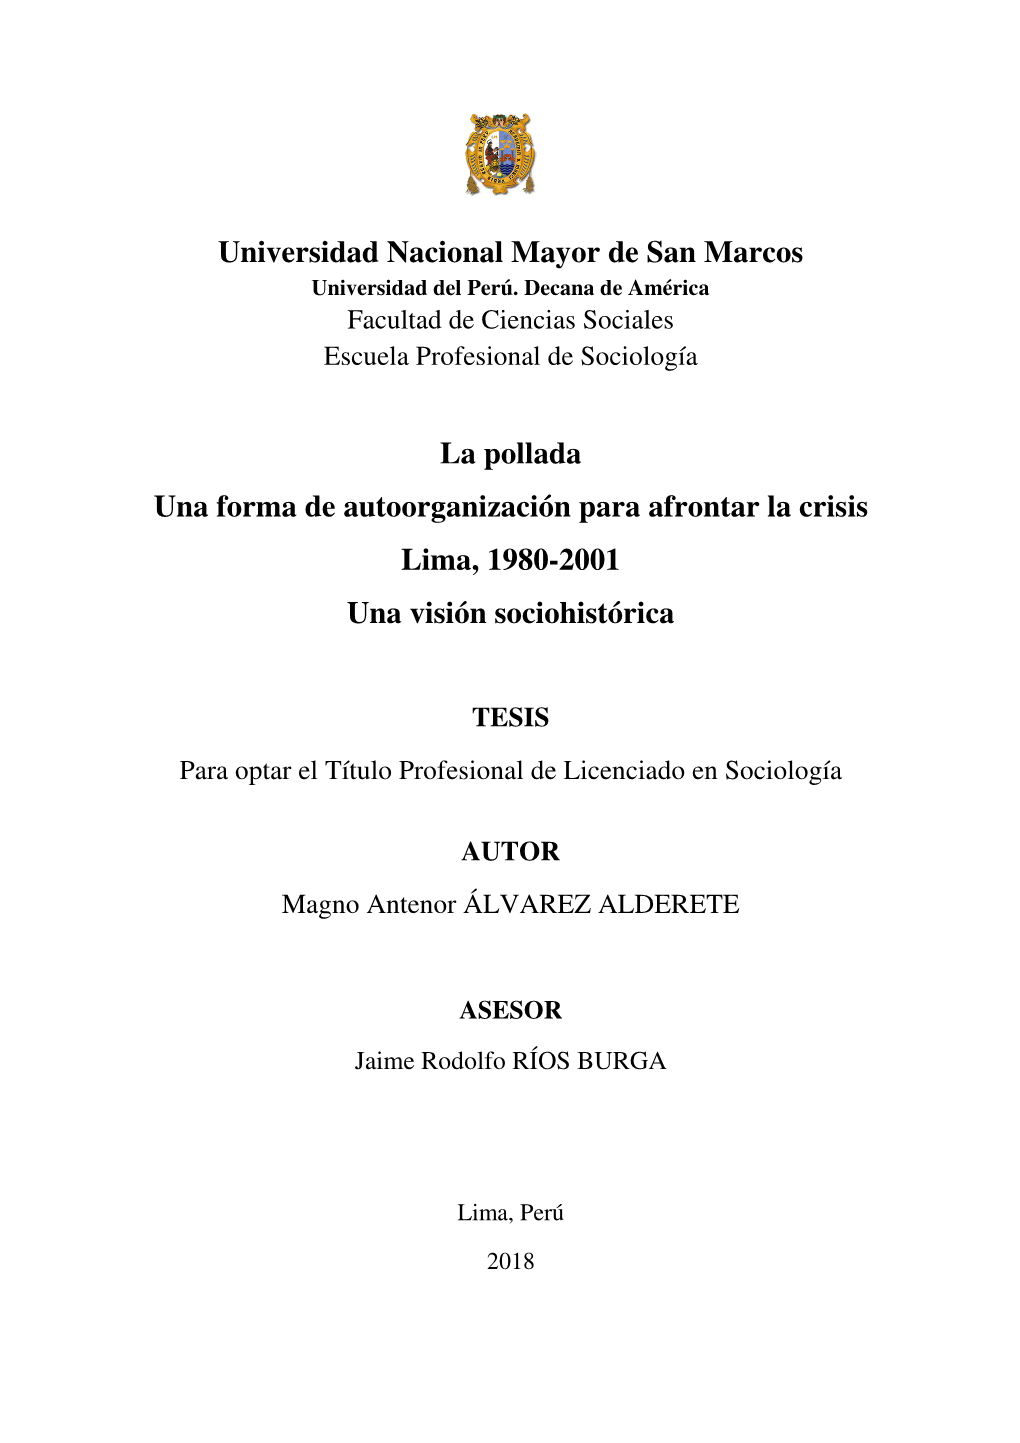 Universidad Nacional Mayor De San Marcos La Pollada Una Forma De Autoorganización Para Afrontar La Crisis Lima, 1980-2001 Una V